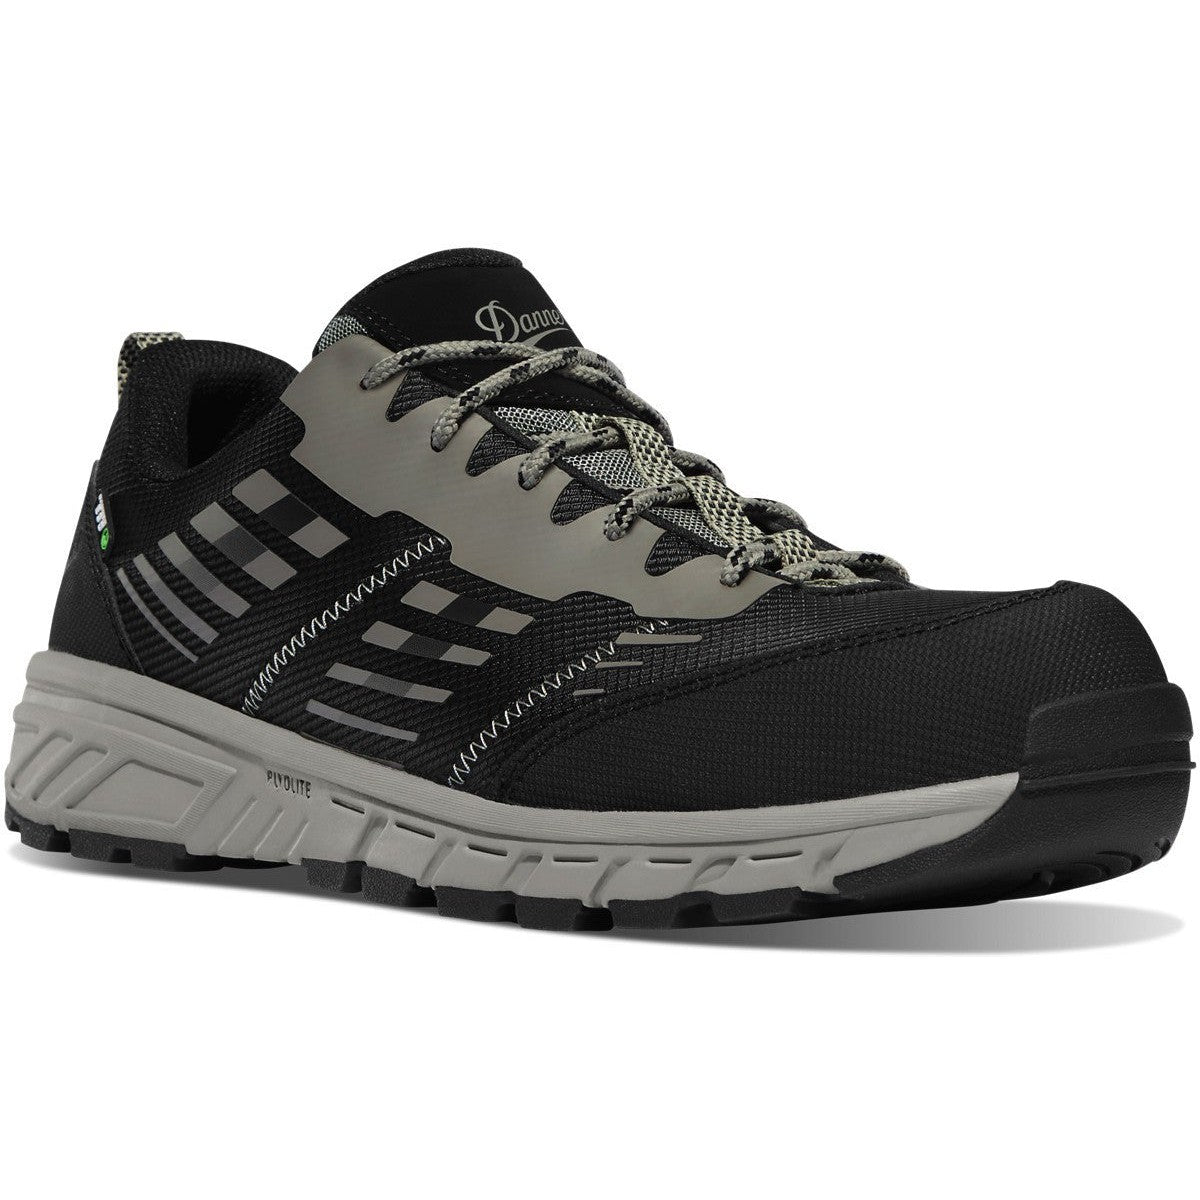 Danner Men's Run Time ESD Composite Toe Work Shoe - Black - 12372 8 / Medium / Black - Overlook Boots